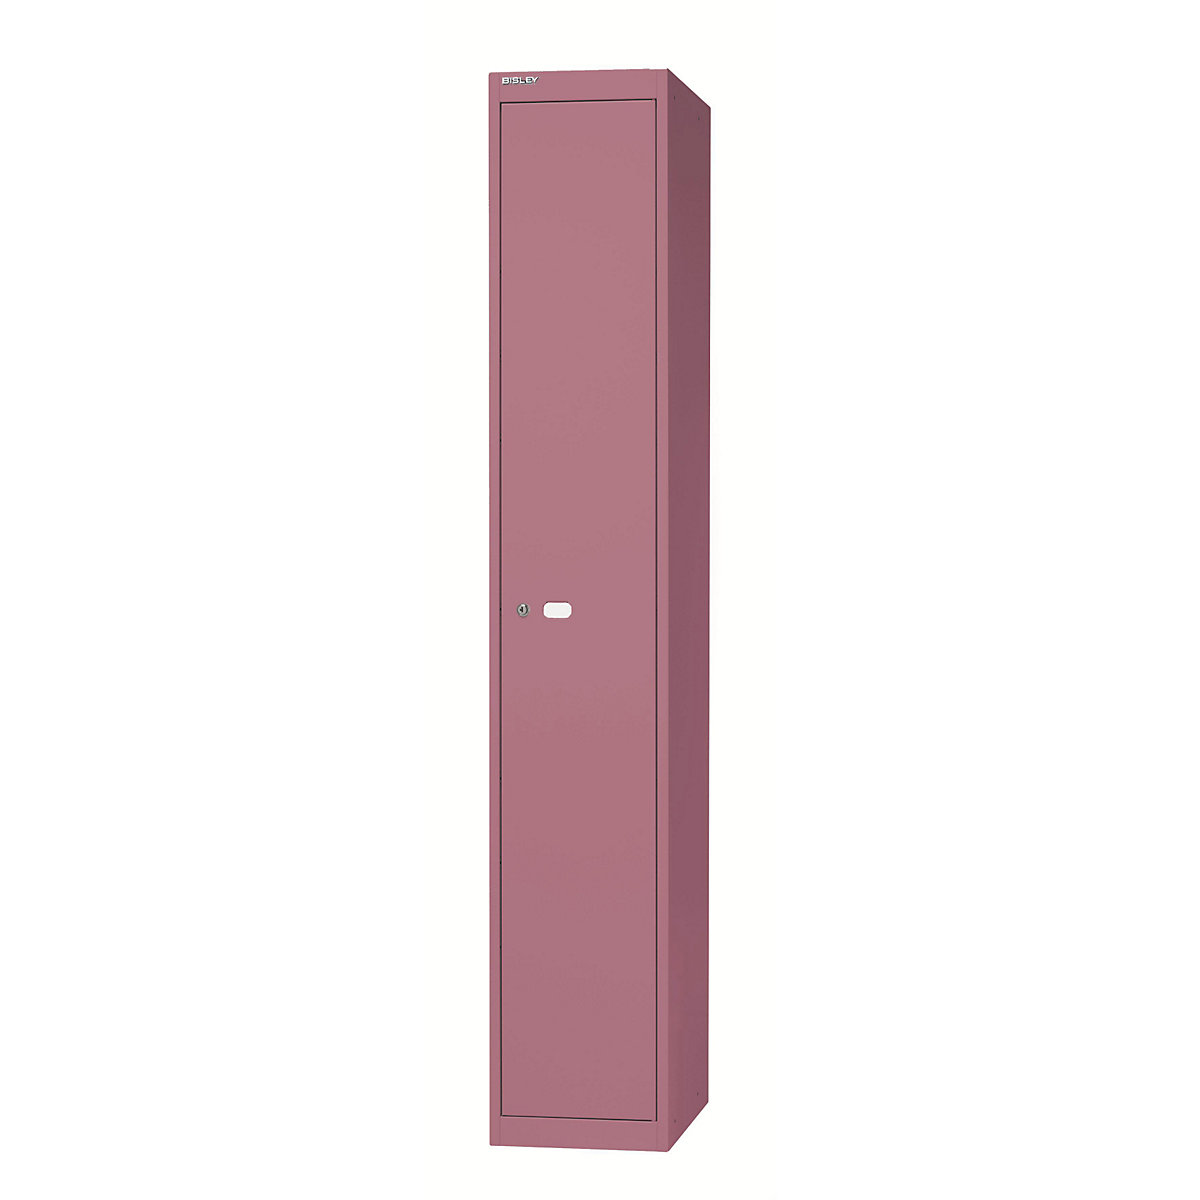 BISLEY OFFICE Garderobensystem, 1 Abteil, Tiefe 305 mm, mit 1 Hutfachboden, 1 Kleiderhaken, pink